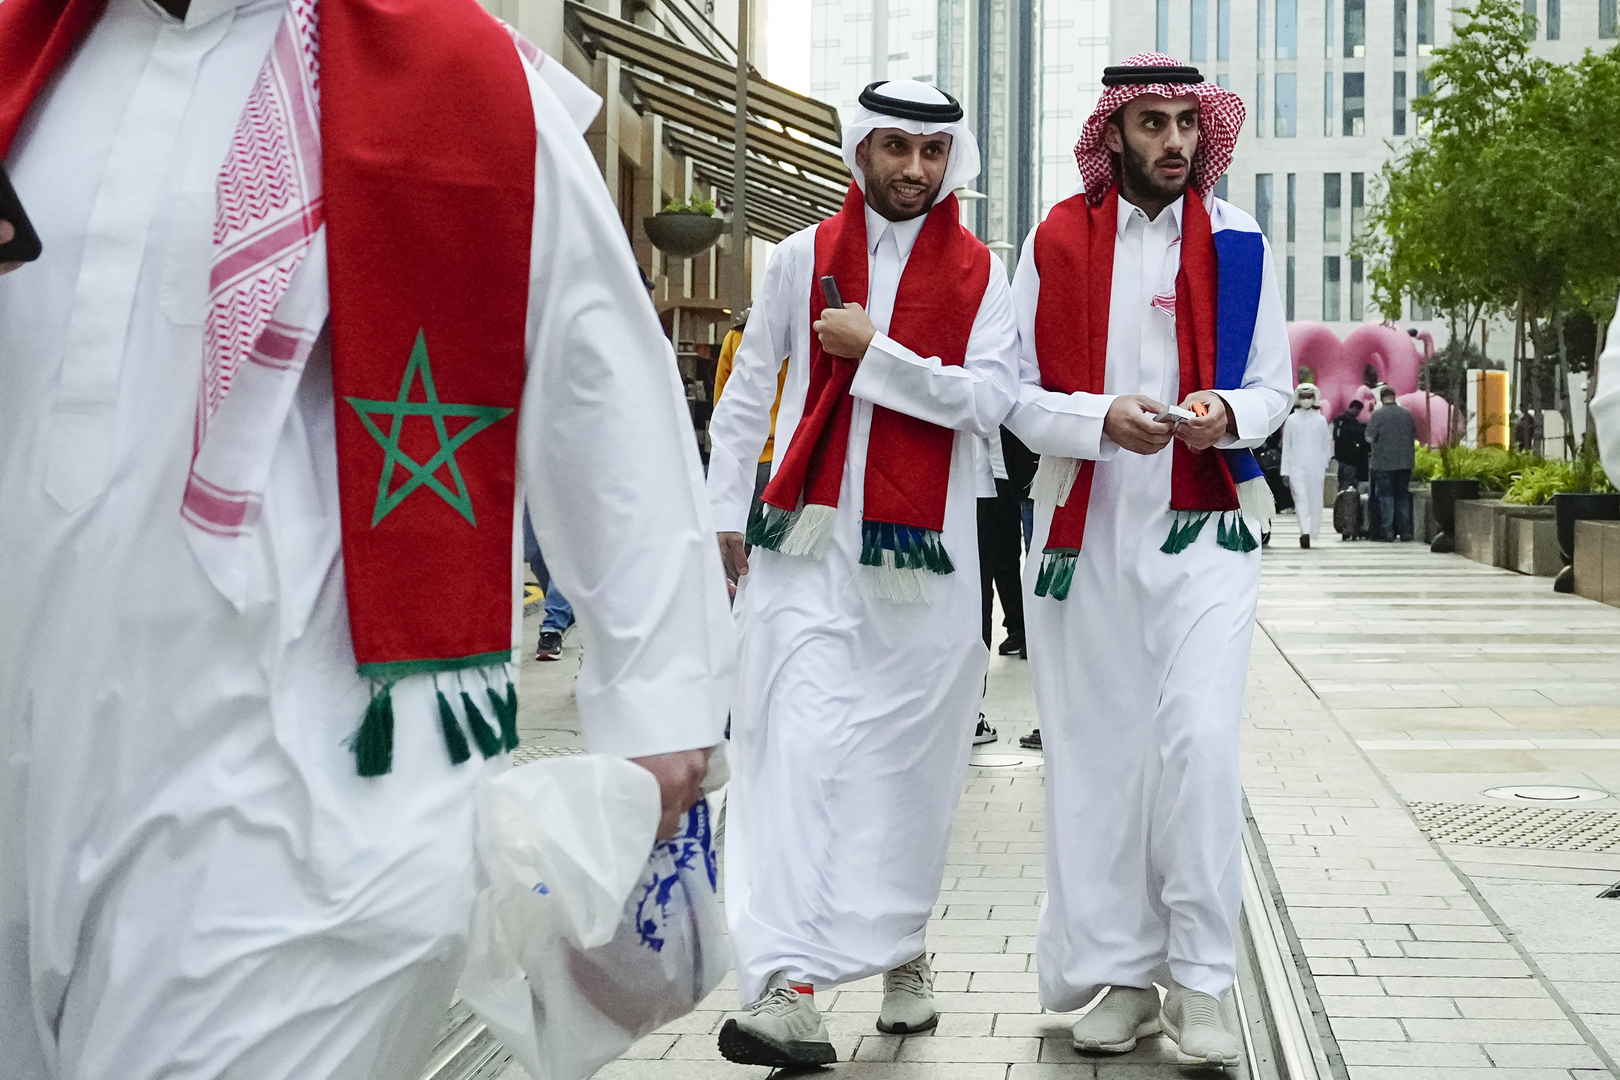 مشهد مؤثر.. قطري يوثق ما حل ببلاده بعد نهاية كأس العالم! (فيديو)